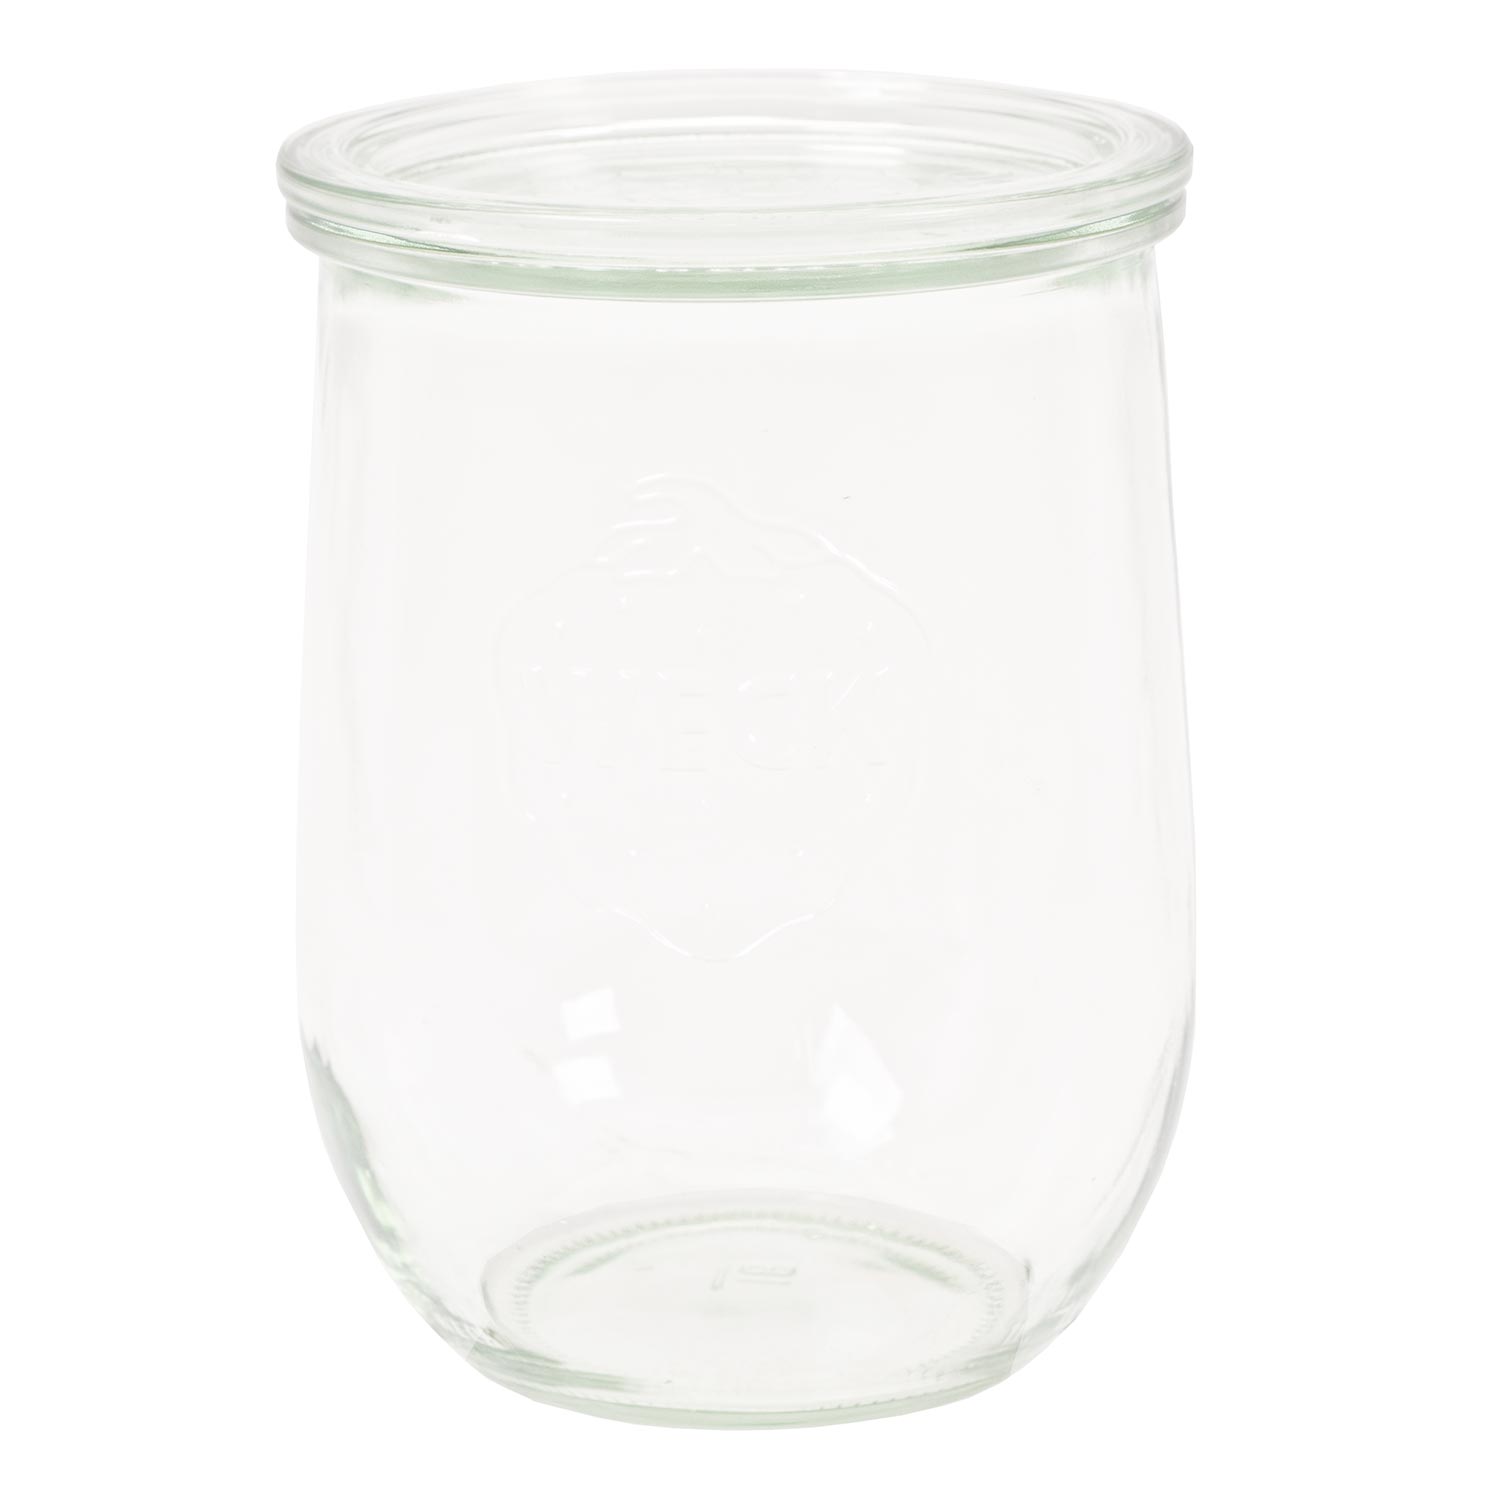 Innenbehälter aus Glas für Truelife Joghurtbereiter